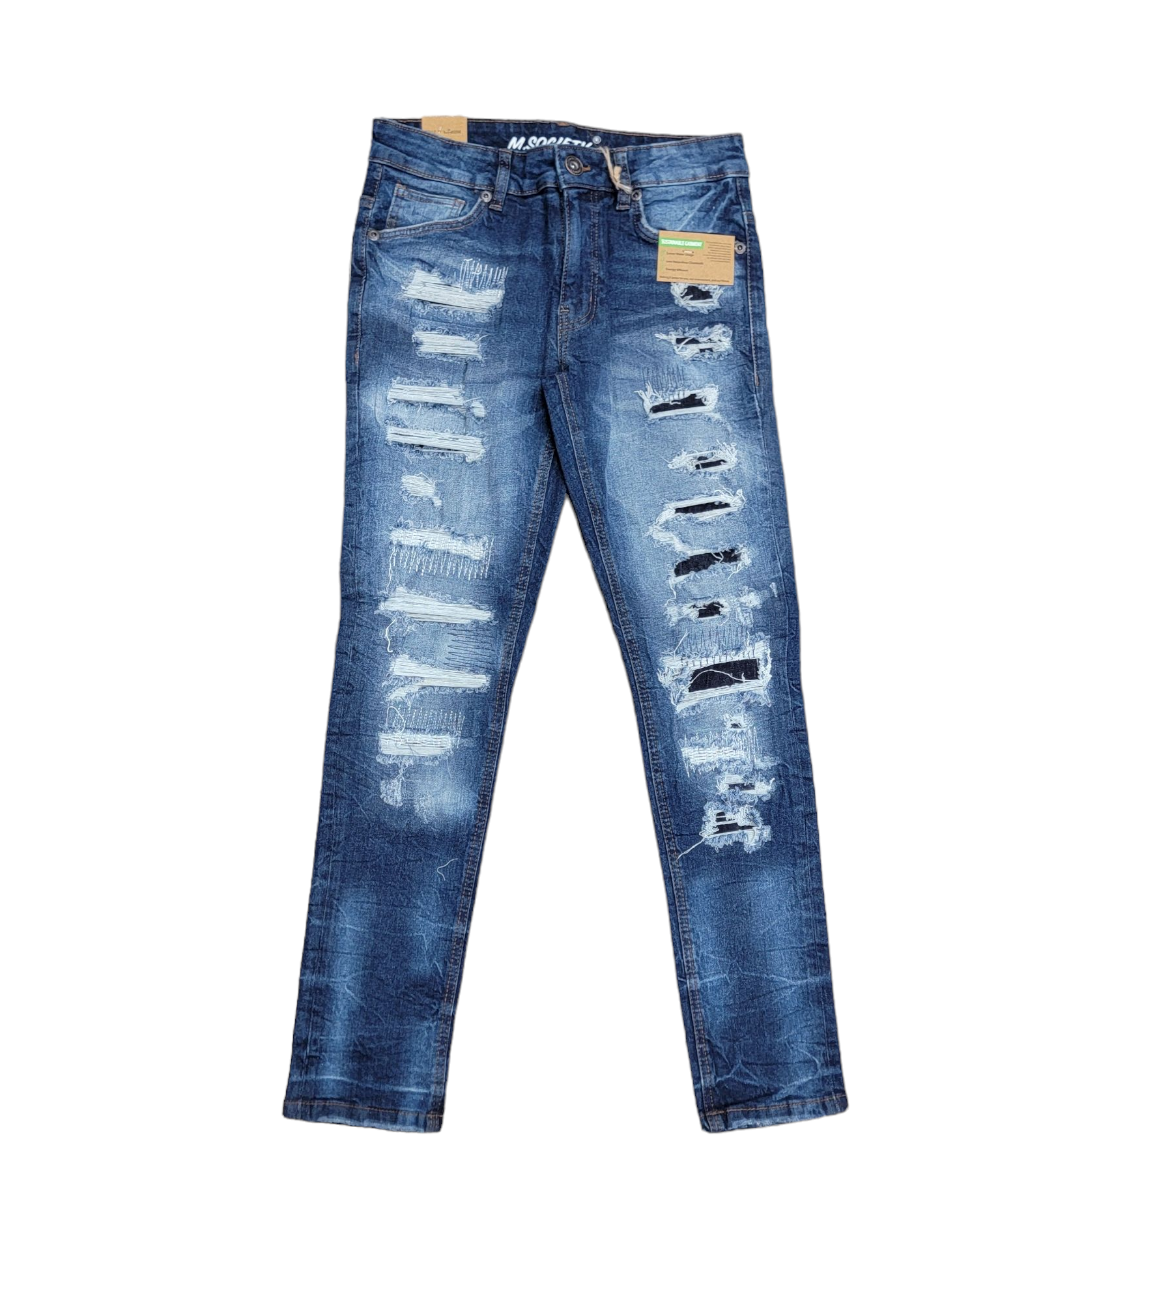 M. Society Men's Skinny Fit Jeans Indigo 80298